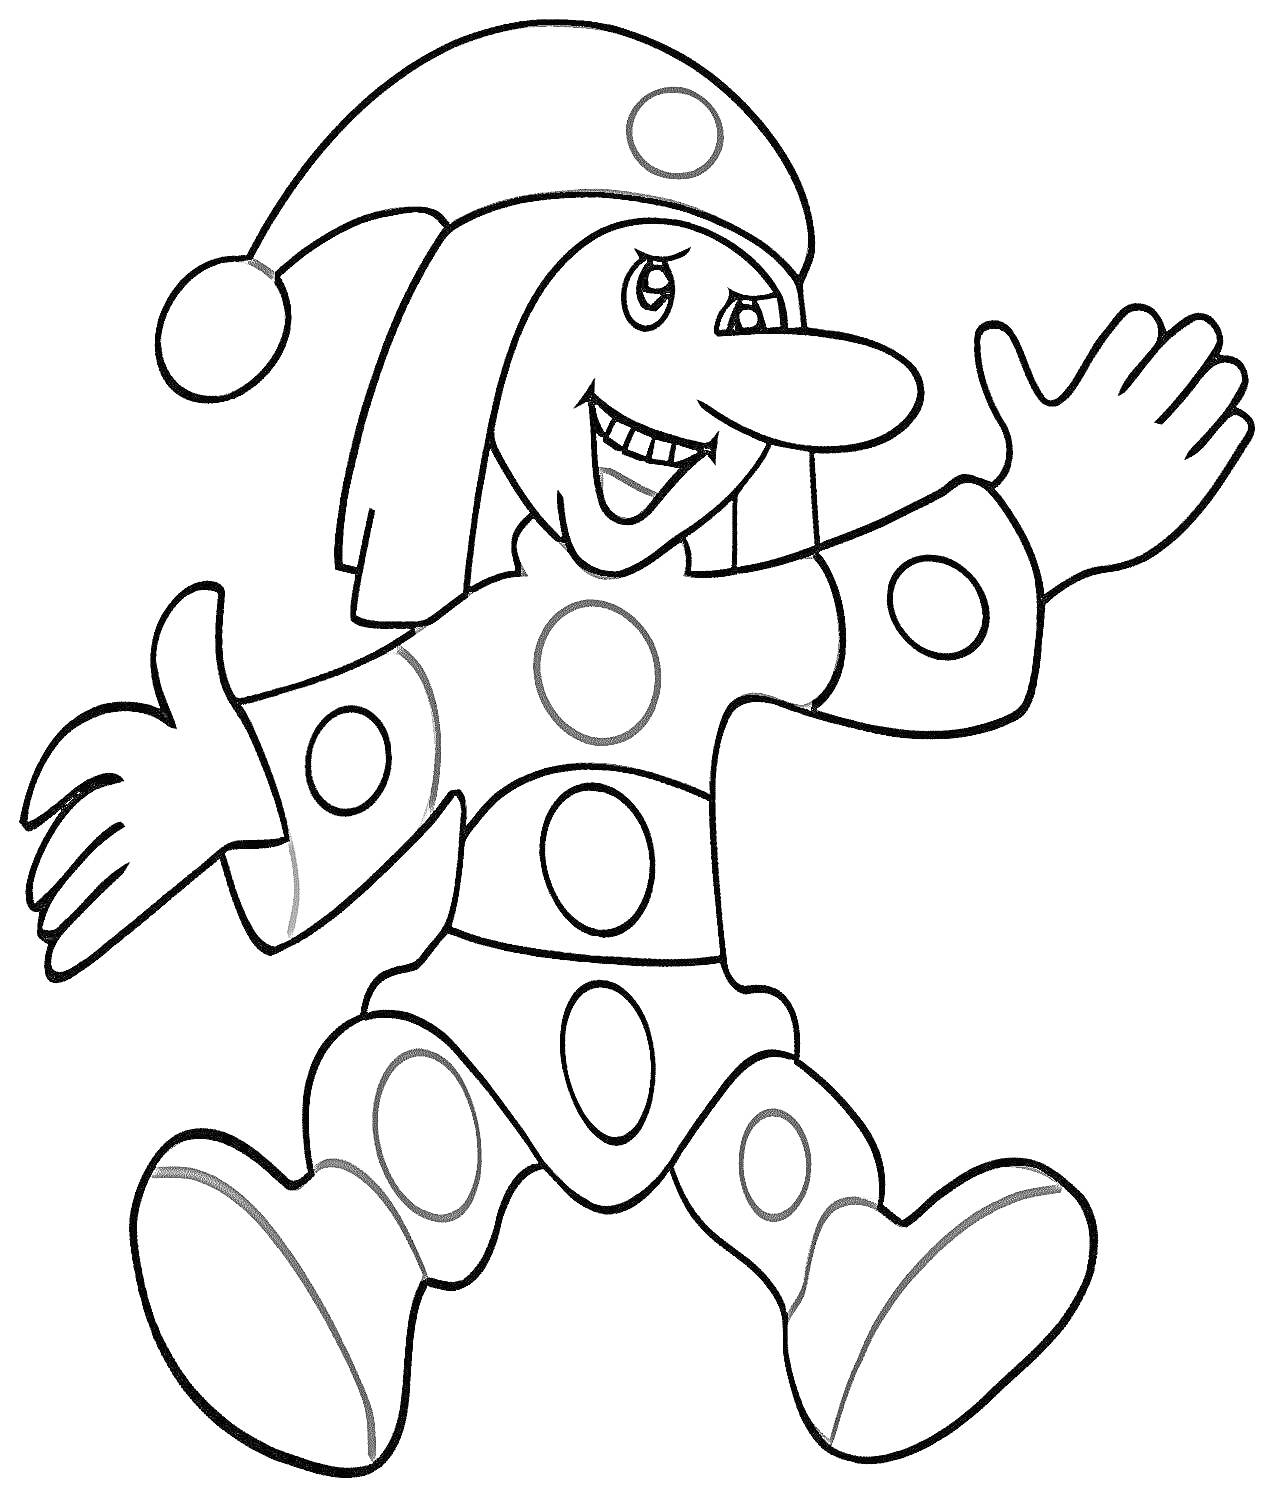 Раскраска Клоун в костюме с кругами, в колпаке с кисточкой, с поднятыми руками